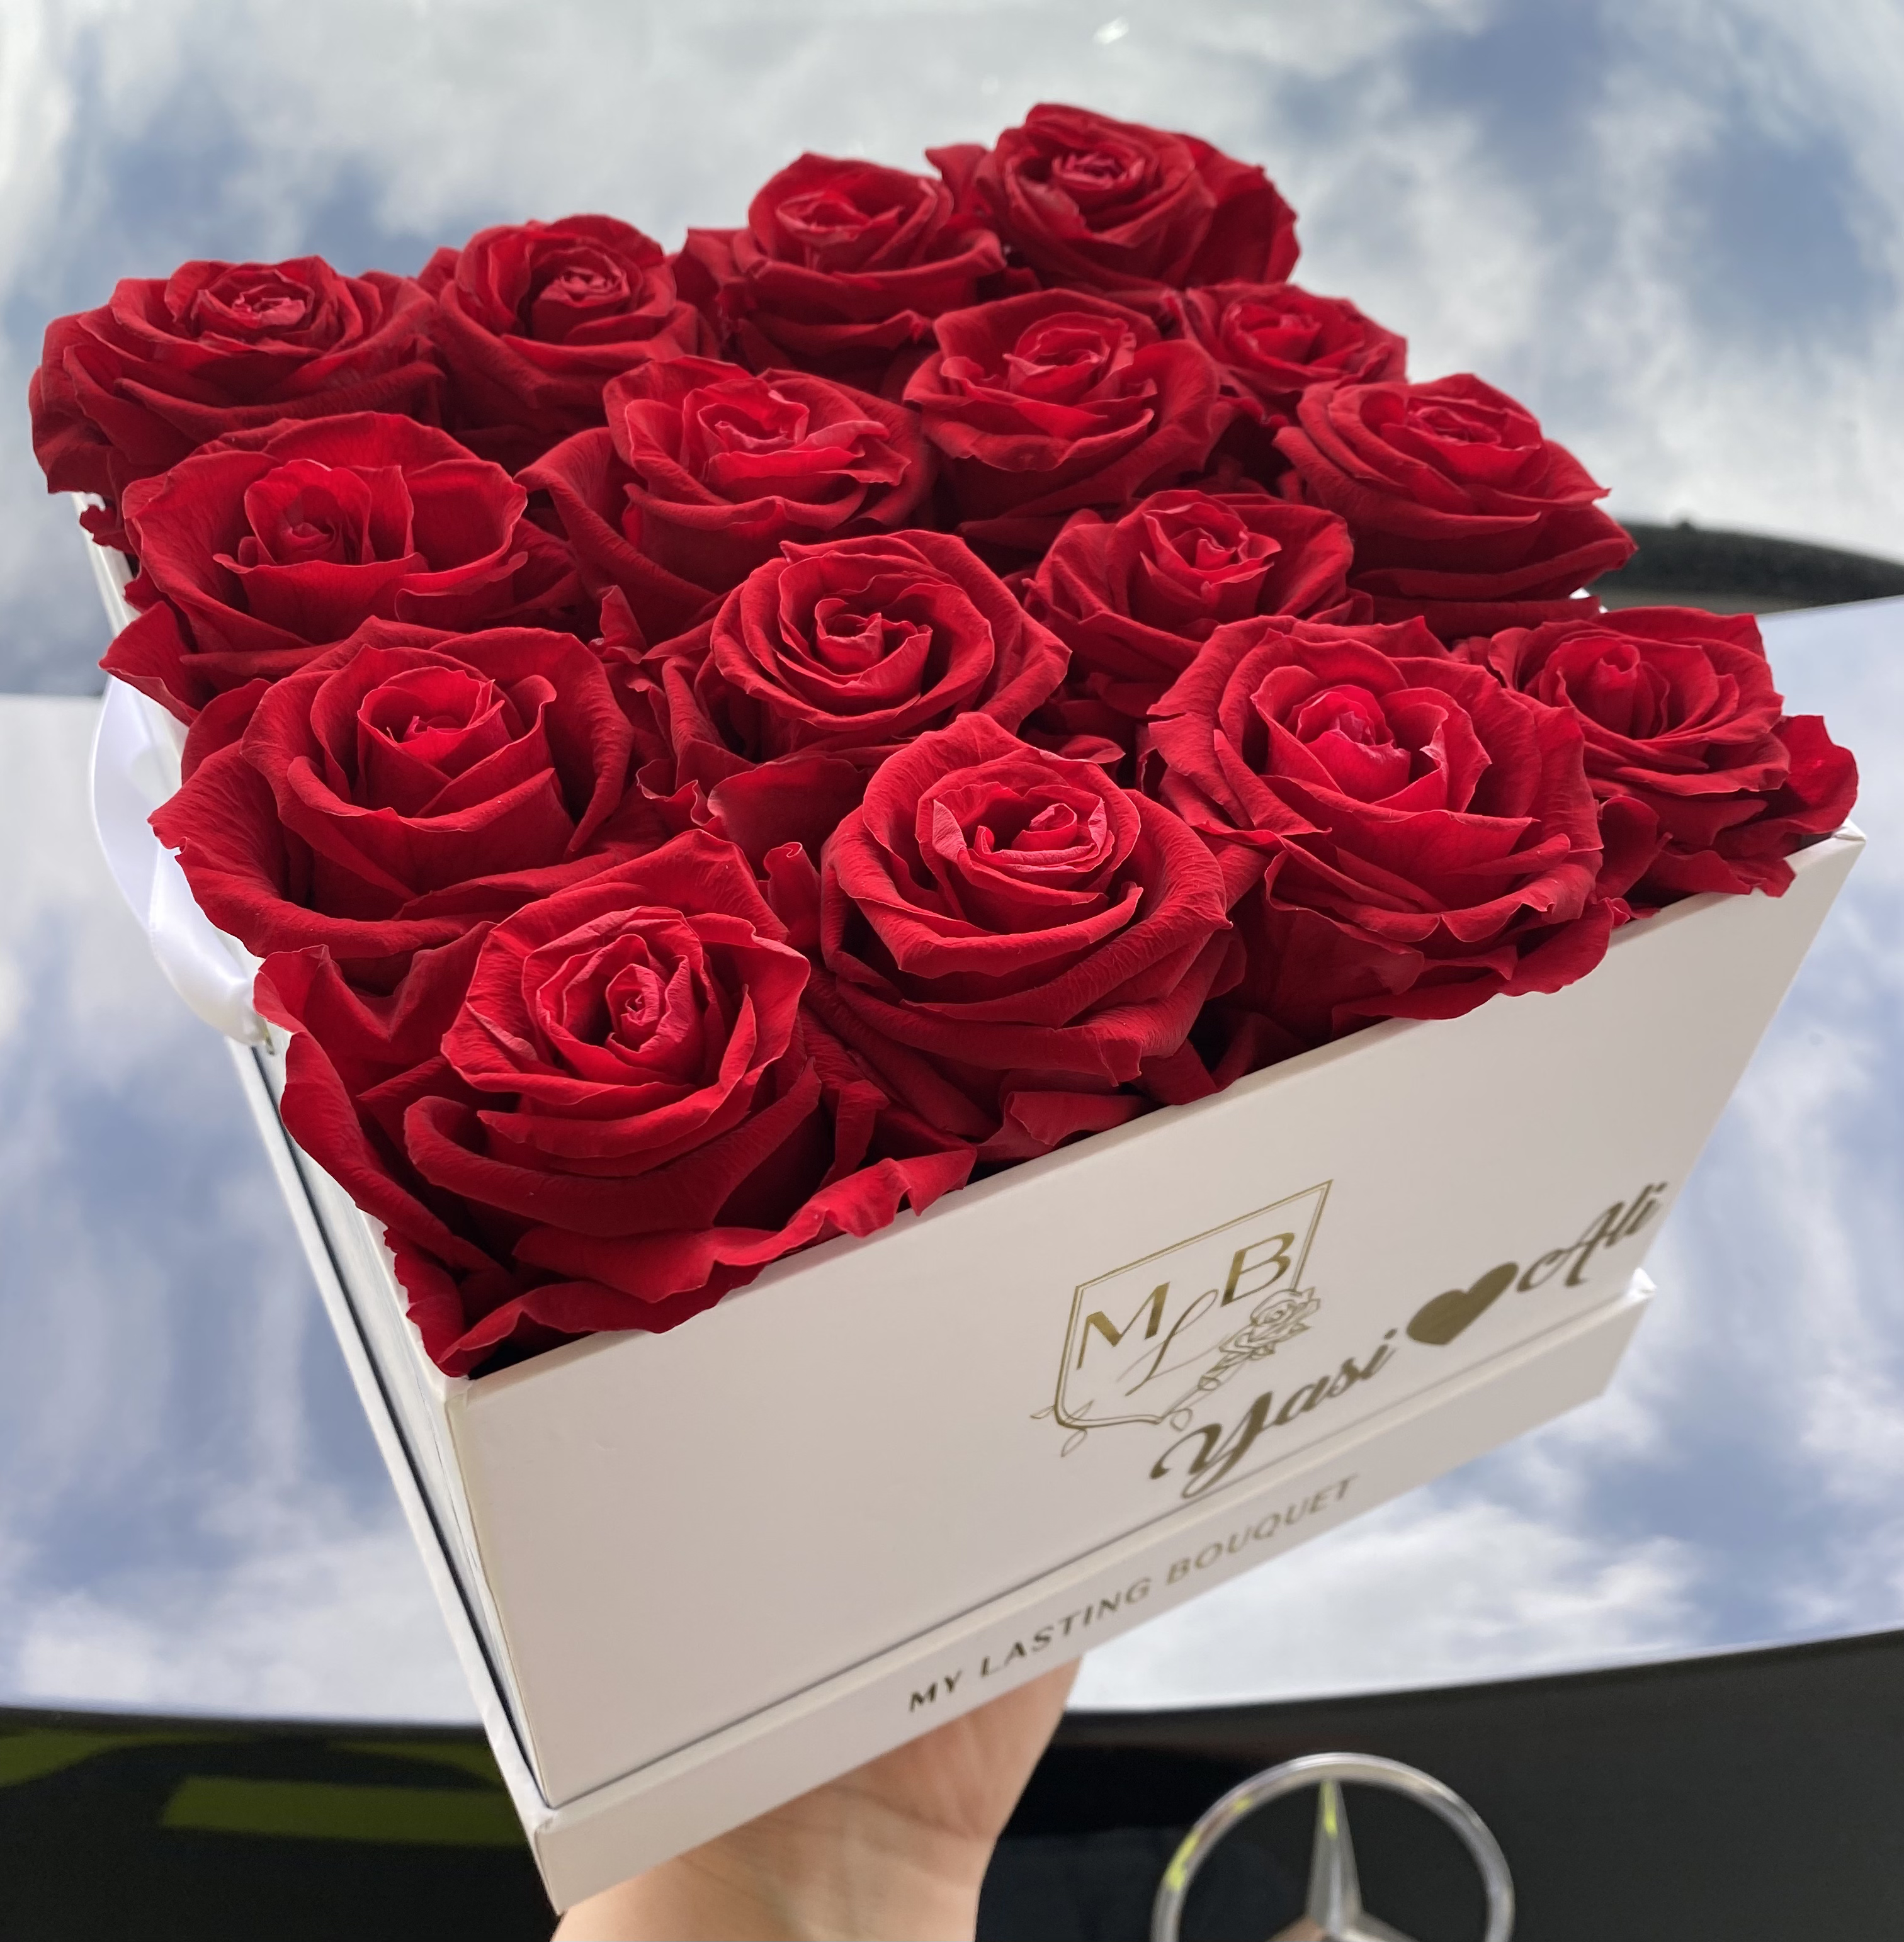 Medium- Red Roses - My Lasting Bouquet